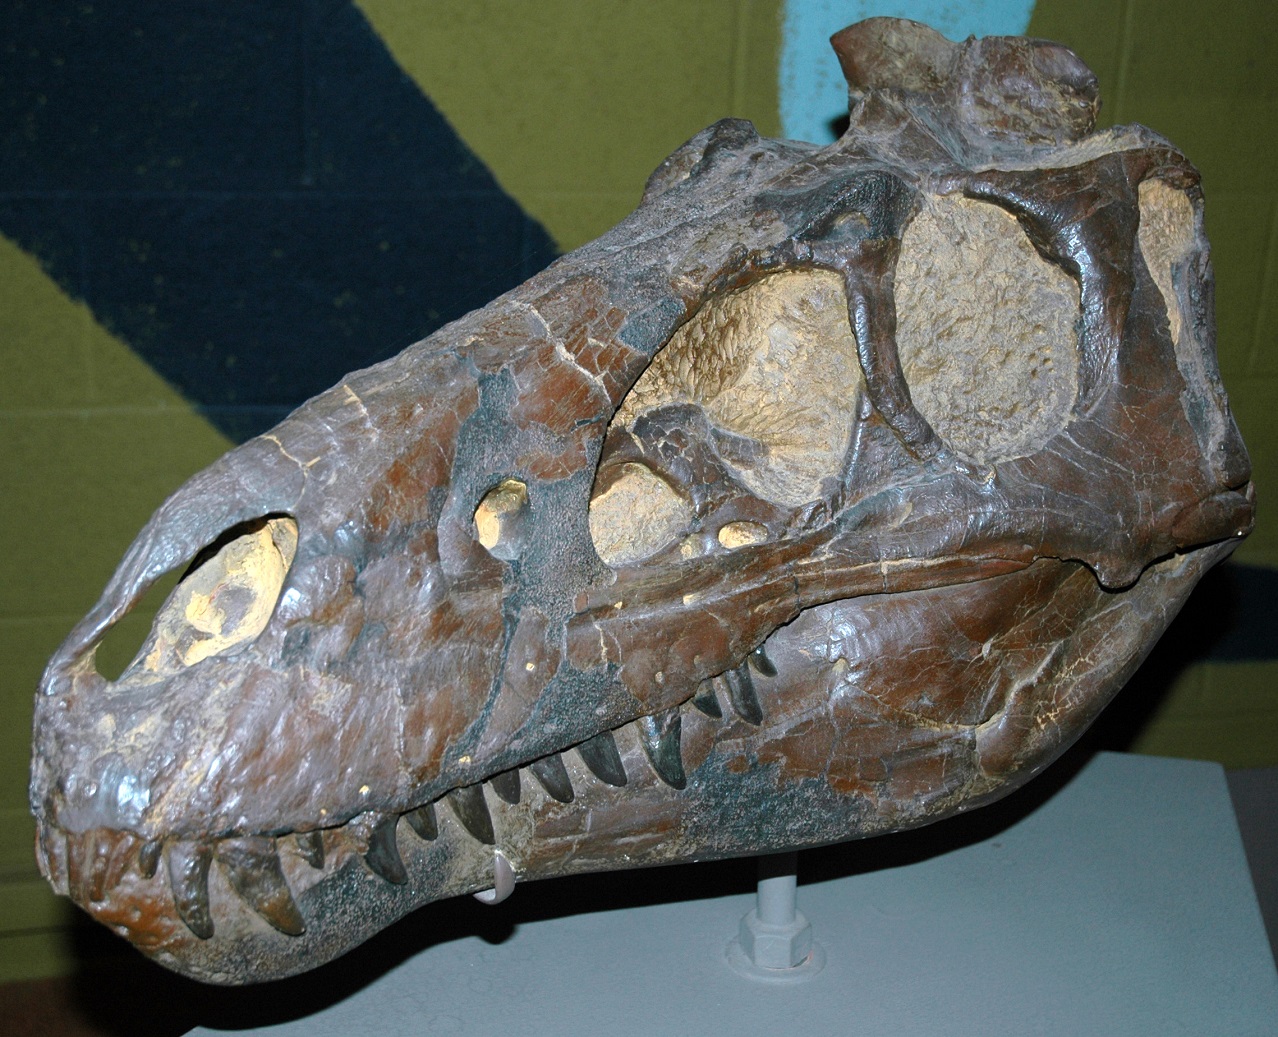 Holotyp pochybného druhu Nanotyrannus lancensis, přesně 57,2 cm dlouhá lebka, popsaná v roce 1946 jako „Gorgosaurus“ lancensis. V roce 1988 se exemplář CMNH 7541 z Clevelandského muzea přírodní historie stal holotypem nově stanoveného druhu menšího t